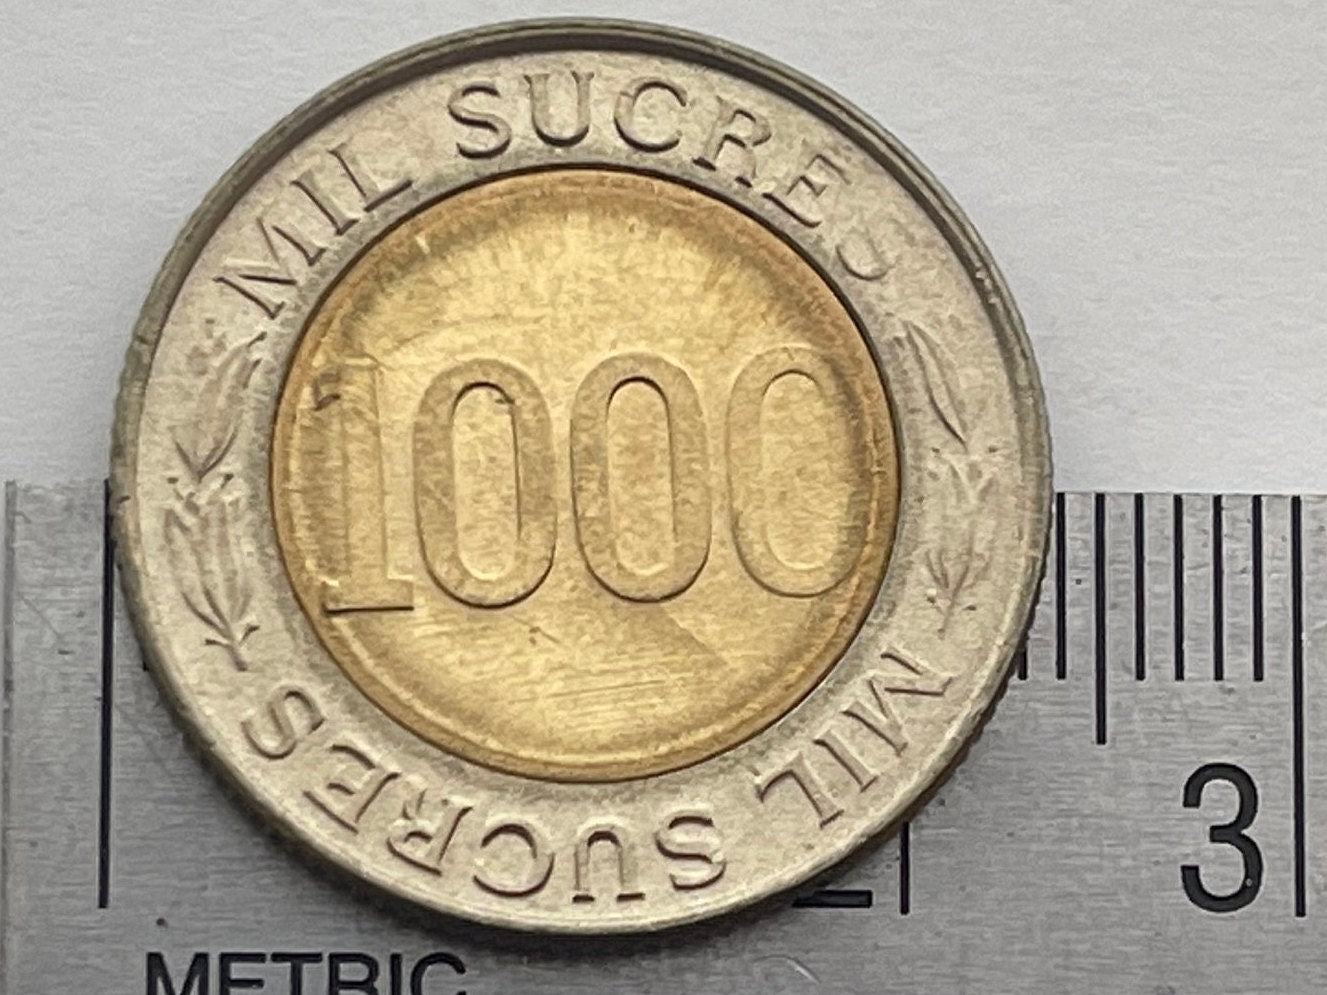 Scientist Reformer Eugenio Espejo 1000 Sucres Ecuador Authentic Coin Money for Jewelry and Craft Making (Bimetallic) (1997)